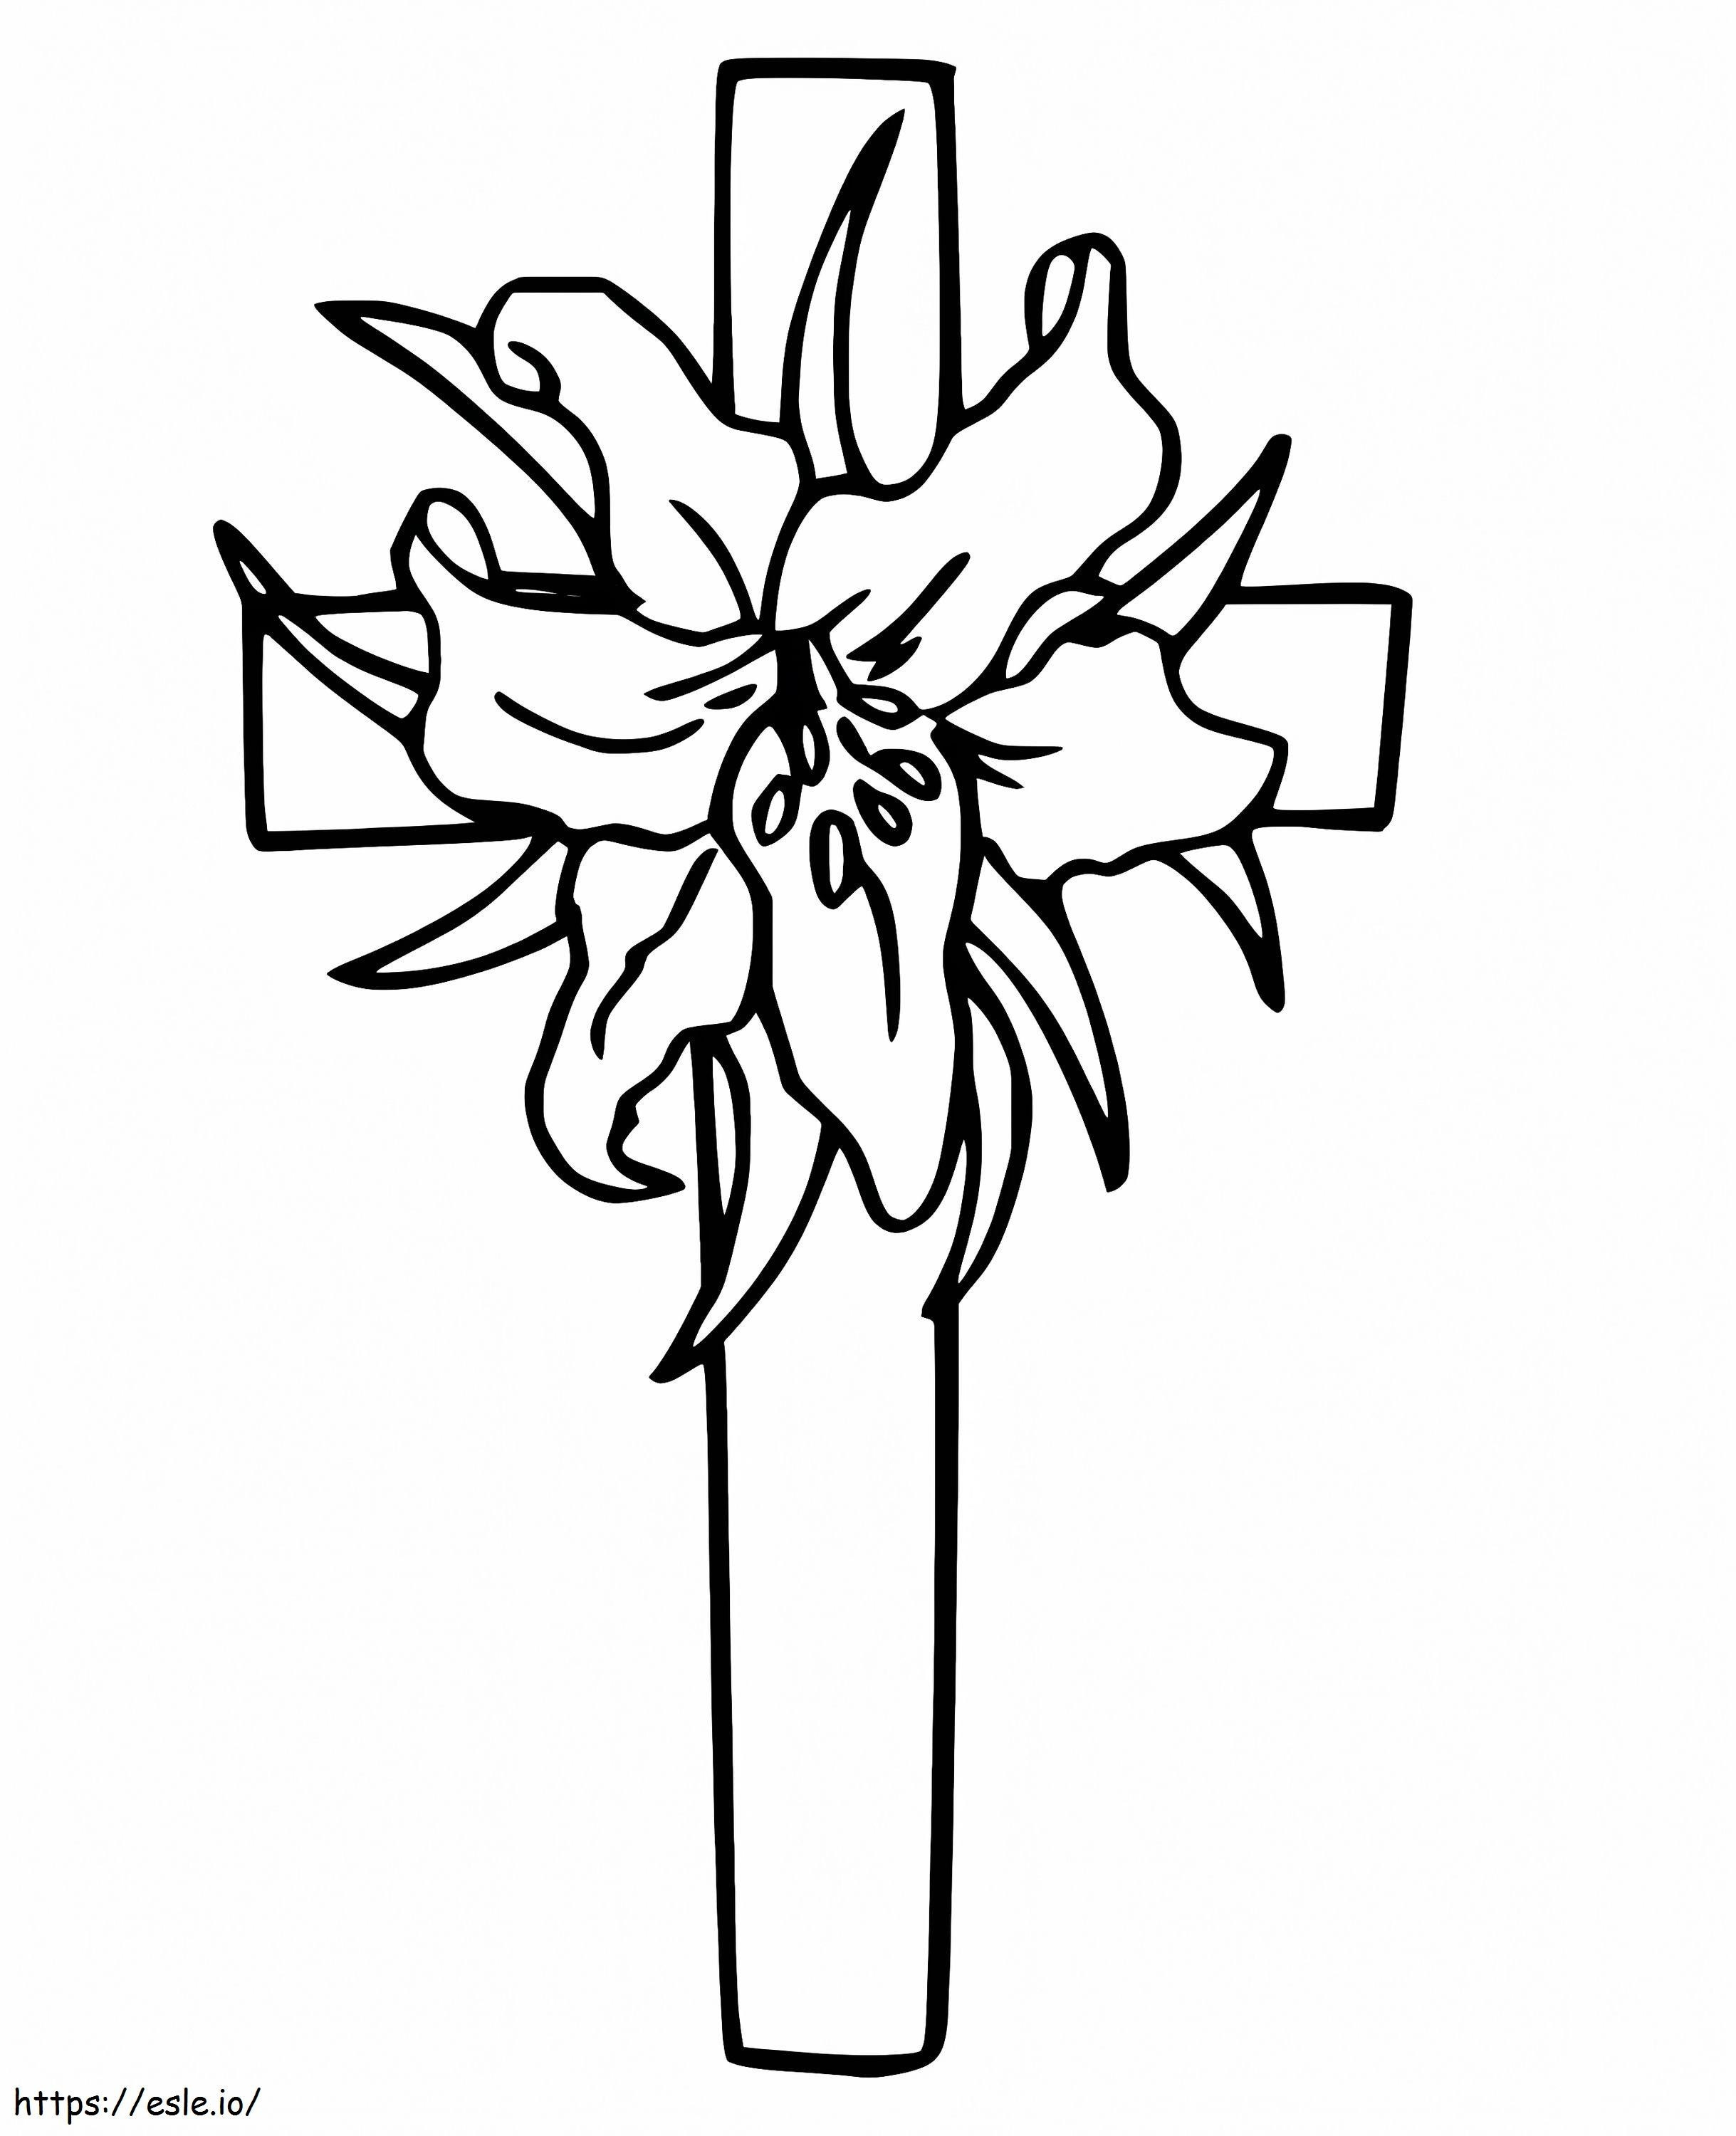 Krzyż Wielkanocny do wydrukowania kolorowanka